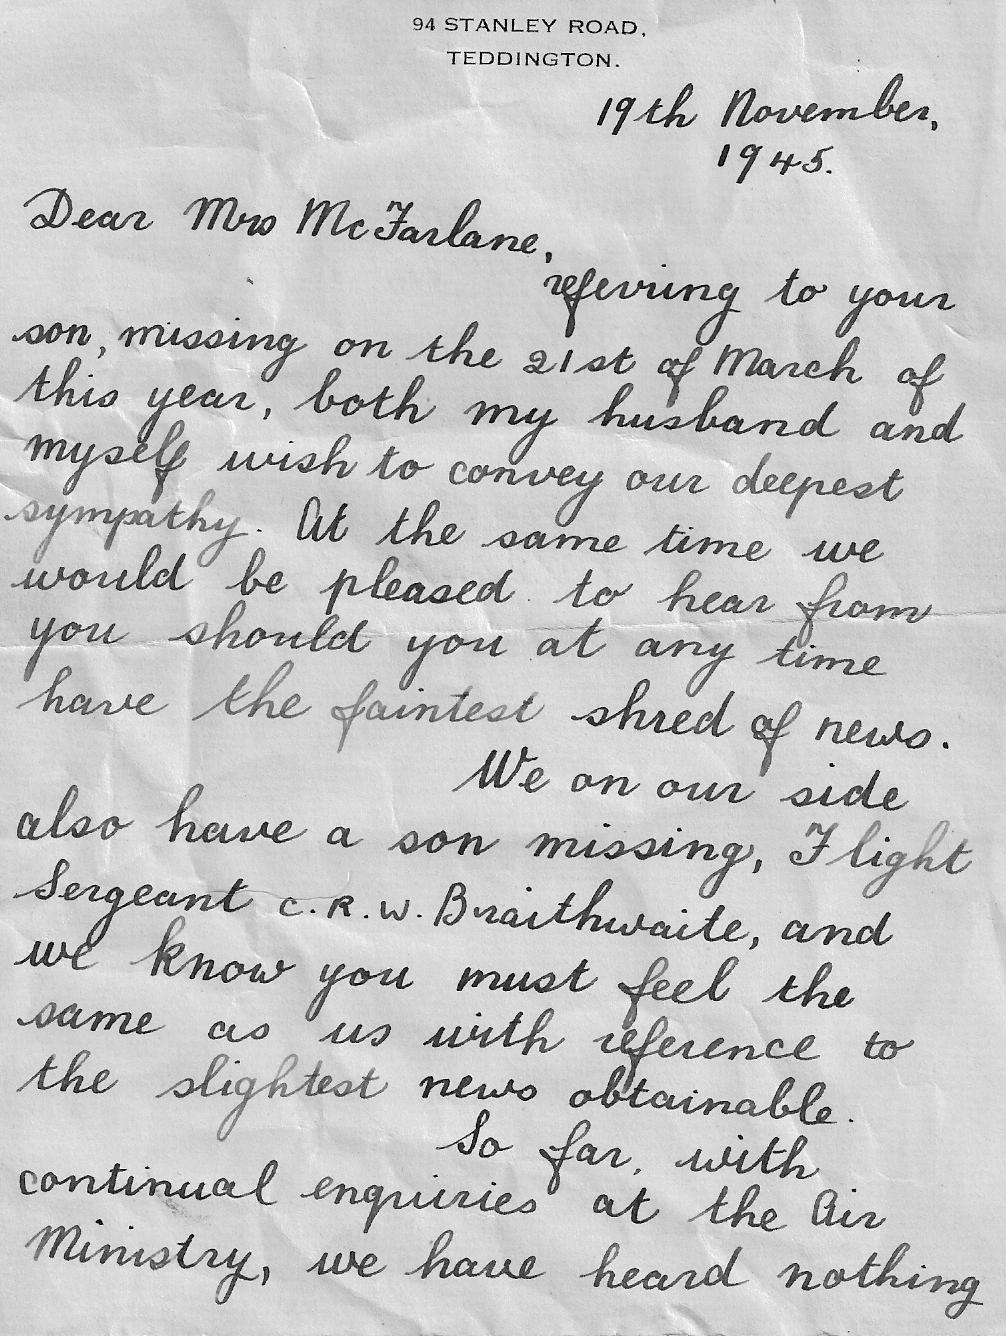 McFarlane_James_ref_Braithwaite_Letter_from_R_Braithwaite_page_1